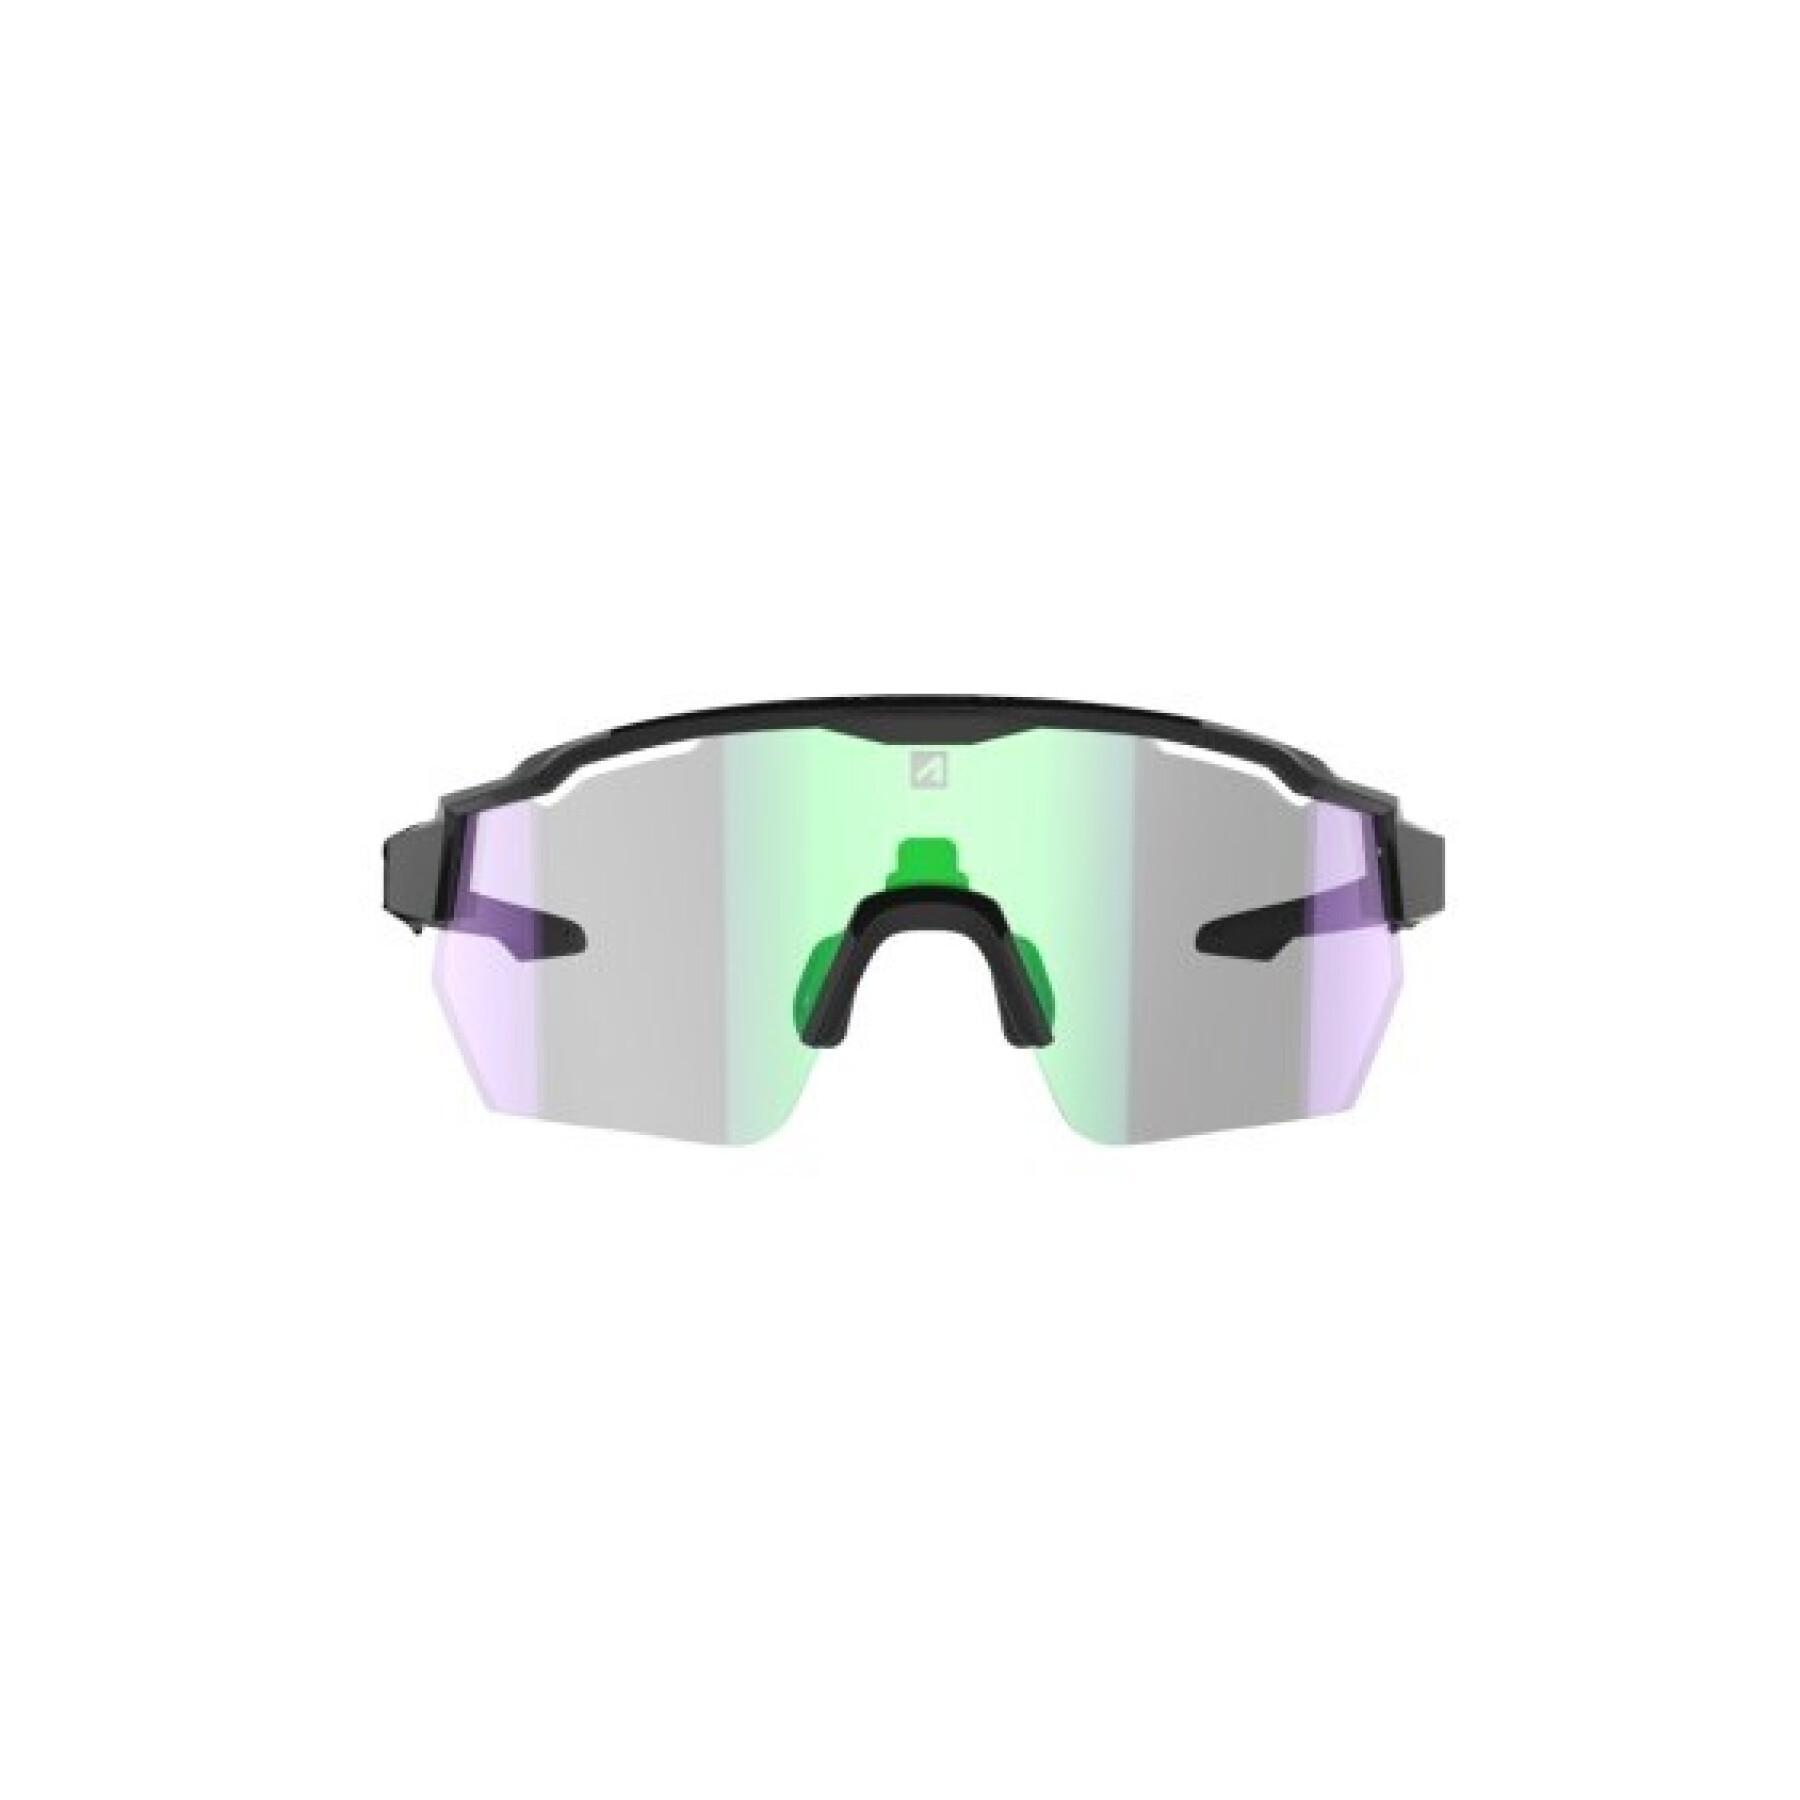 Óculos fotocrómicos categoria 1 a 3 AZR Kromic Race Rx